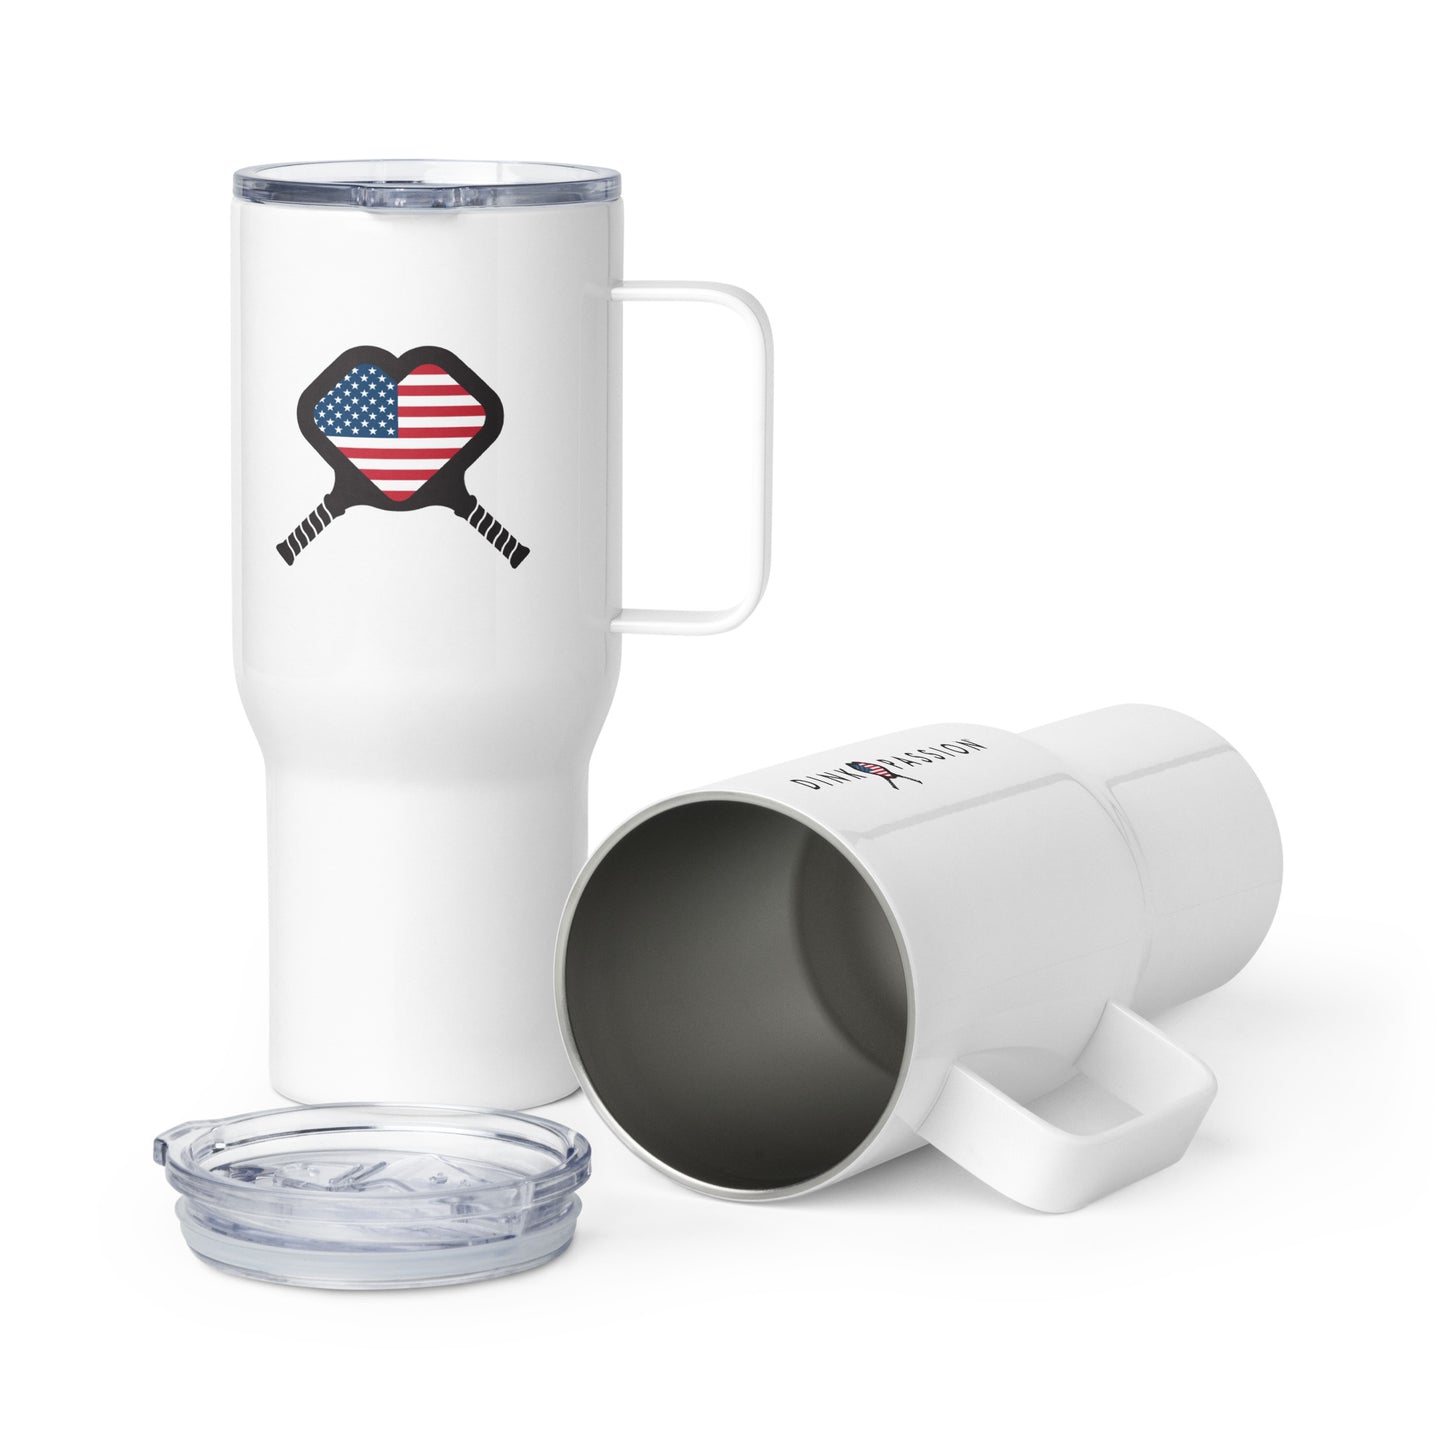 USA Travel mug with a handle